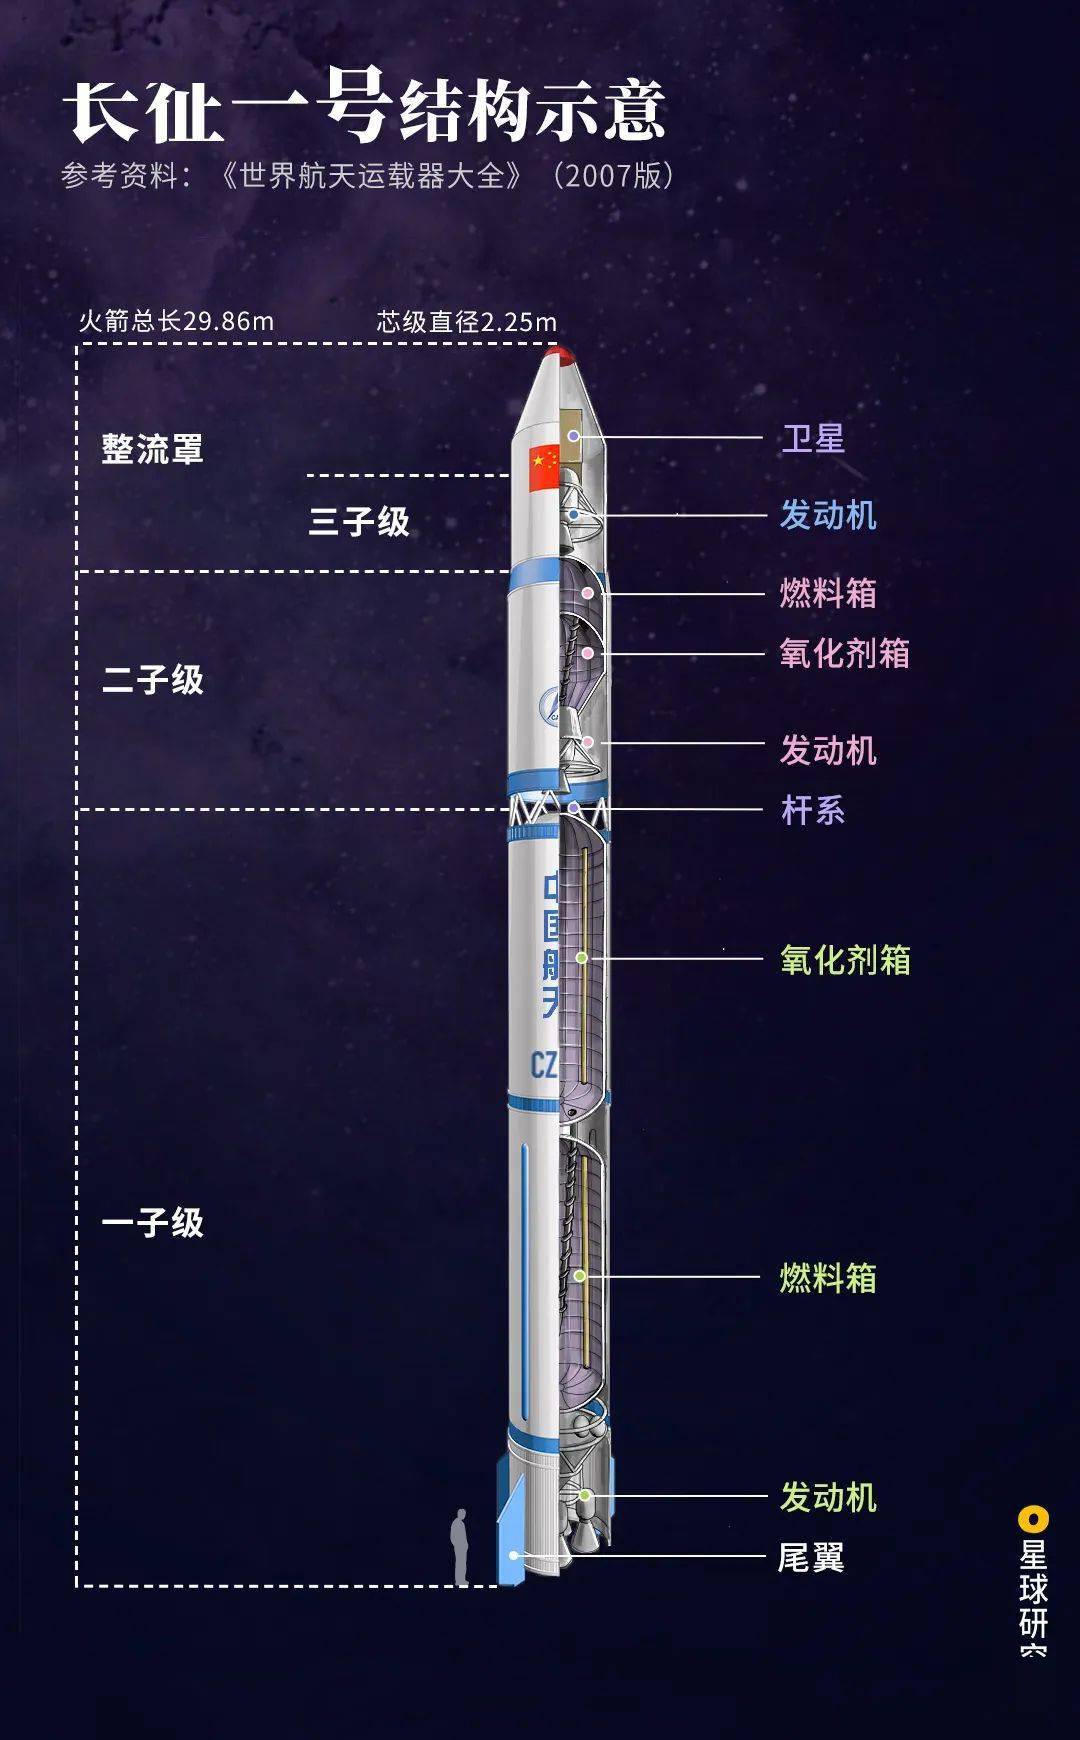 中国的 第一枚运载火箭 长征一号(cz-1) ▲长征一号火箭结构示意,制图